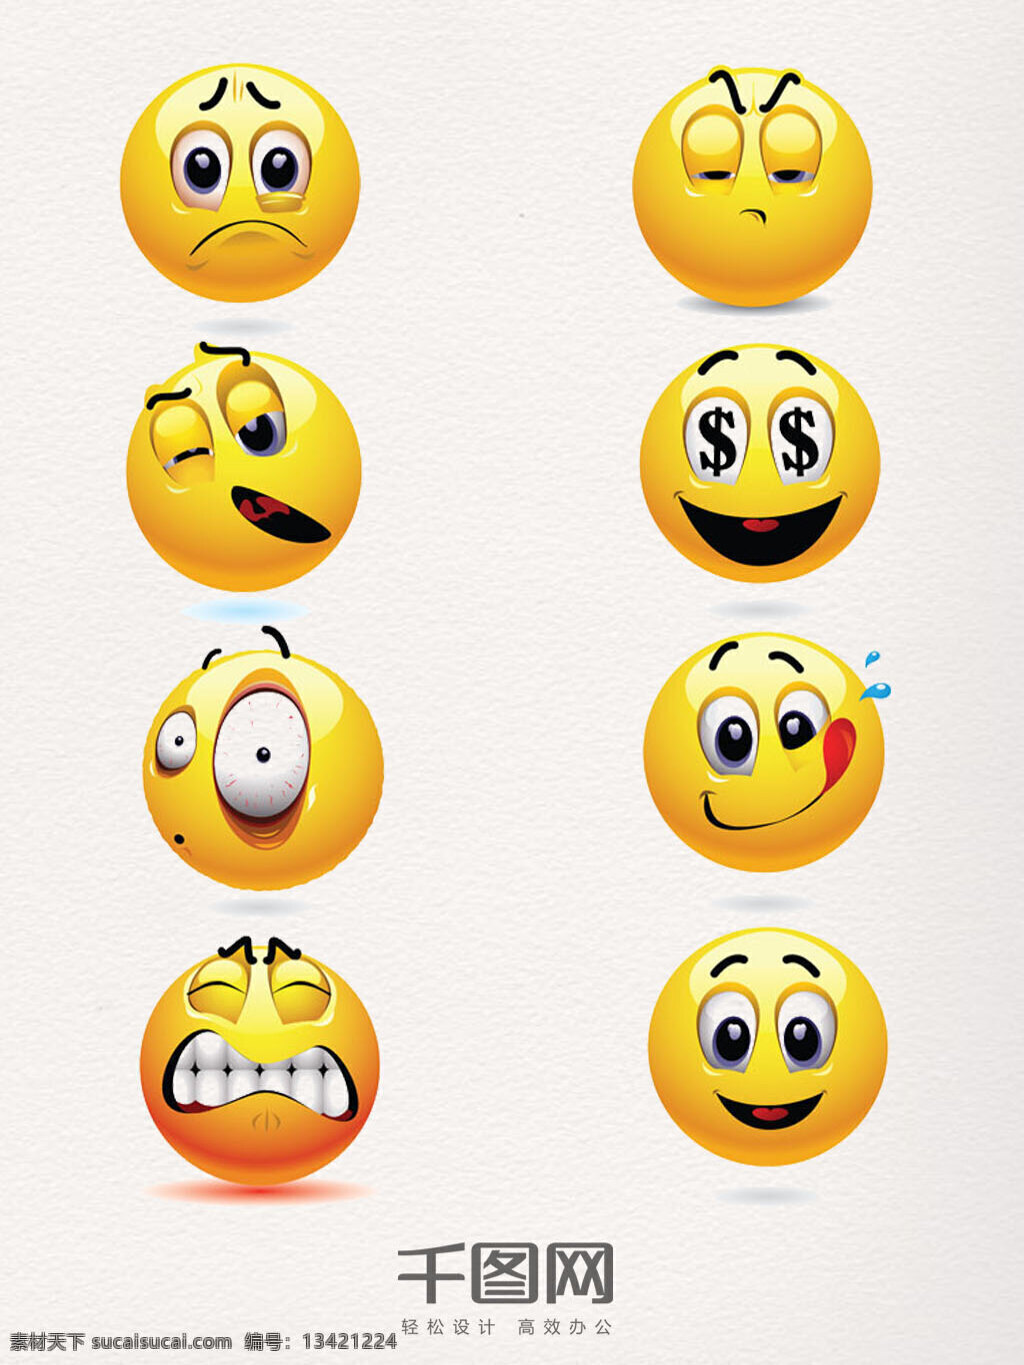 微 信 创意 表情 包 图案 微信 表情包 可爱 卡通 默认 微信表情 情绪